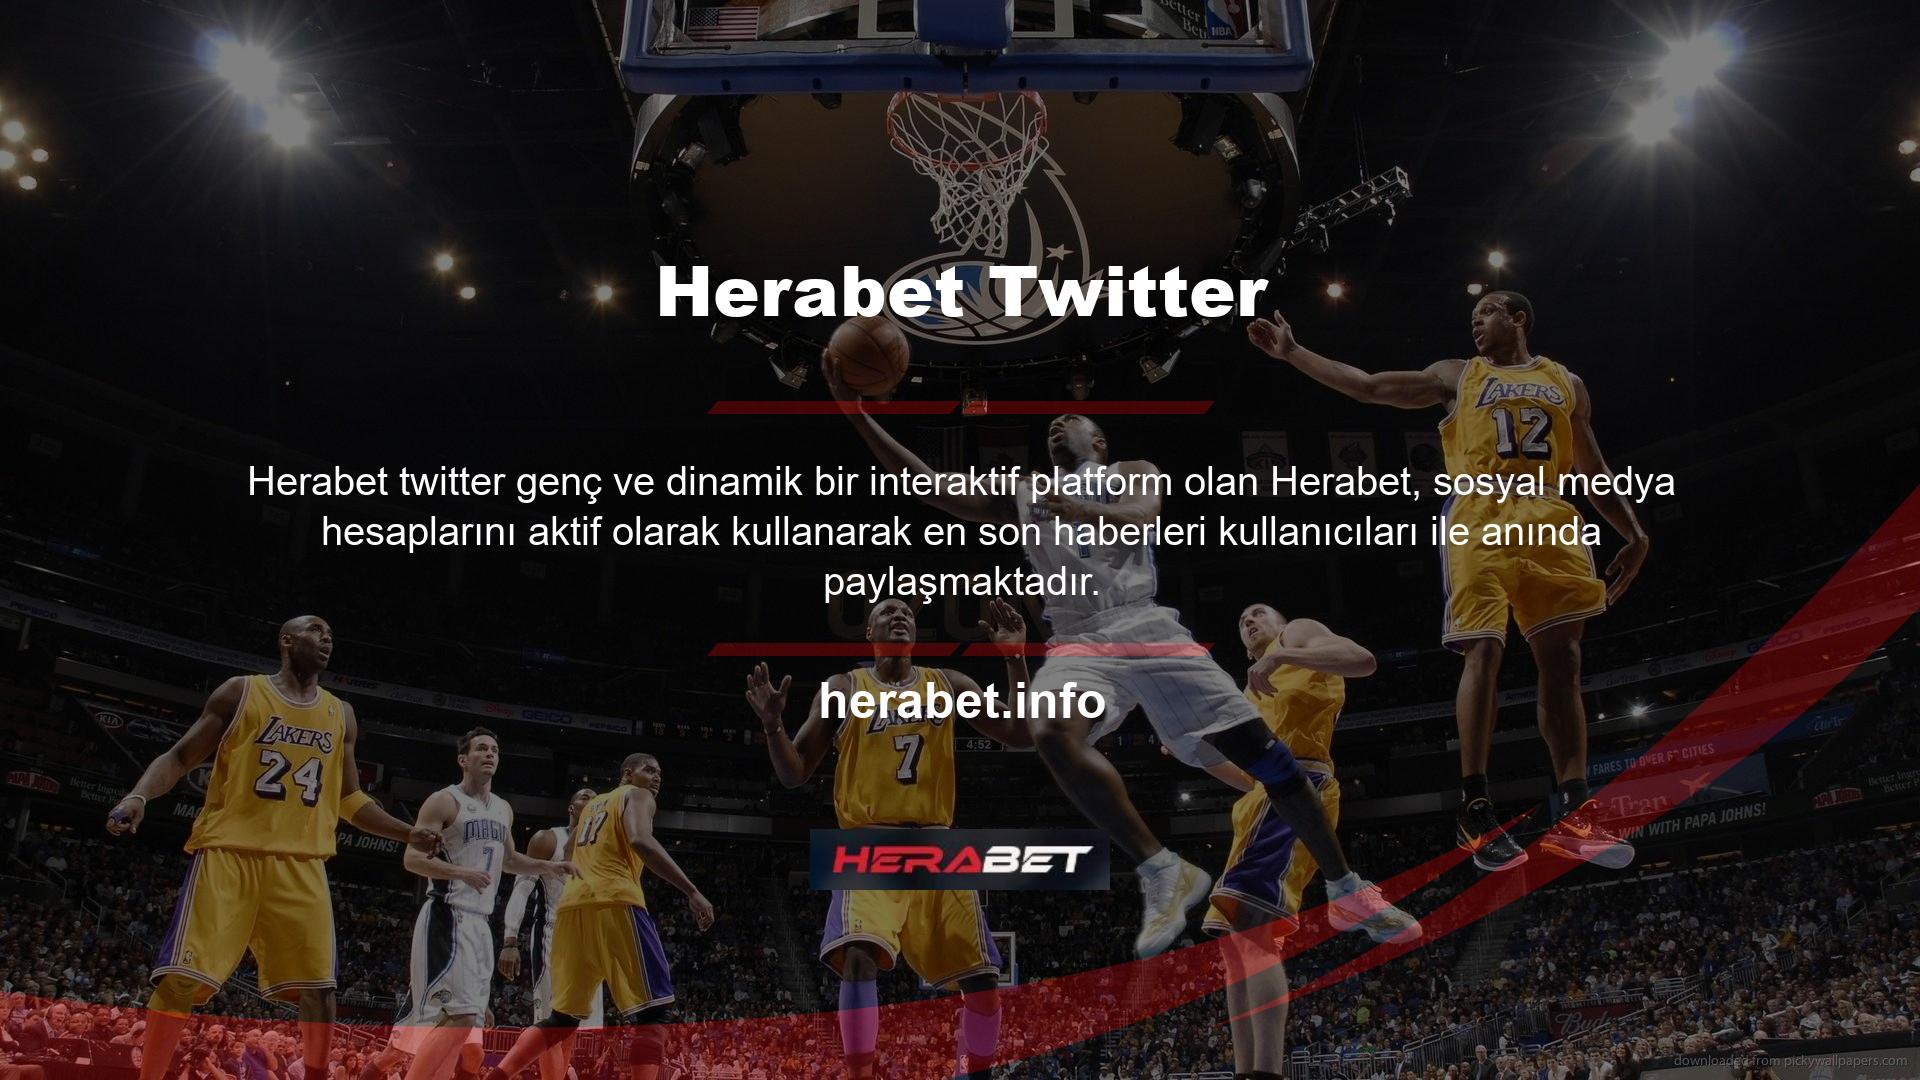 Saatler süren oyun, çekilişler, e-sporlar ve bonus etkinliklerin yanı sıra Herabet, güncellenen giriş adresini sosyal medya hesaplarında kullanıcılarla paylaşıyor